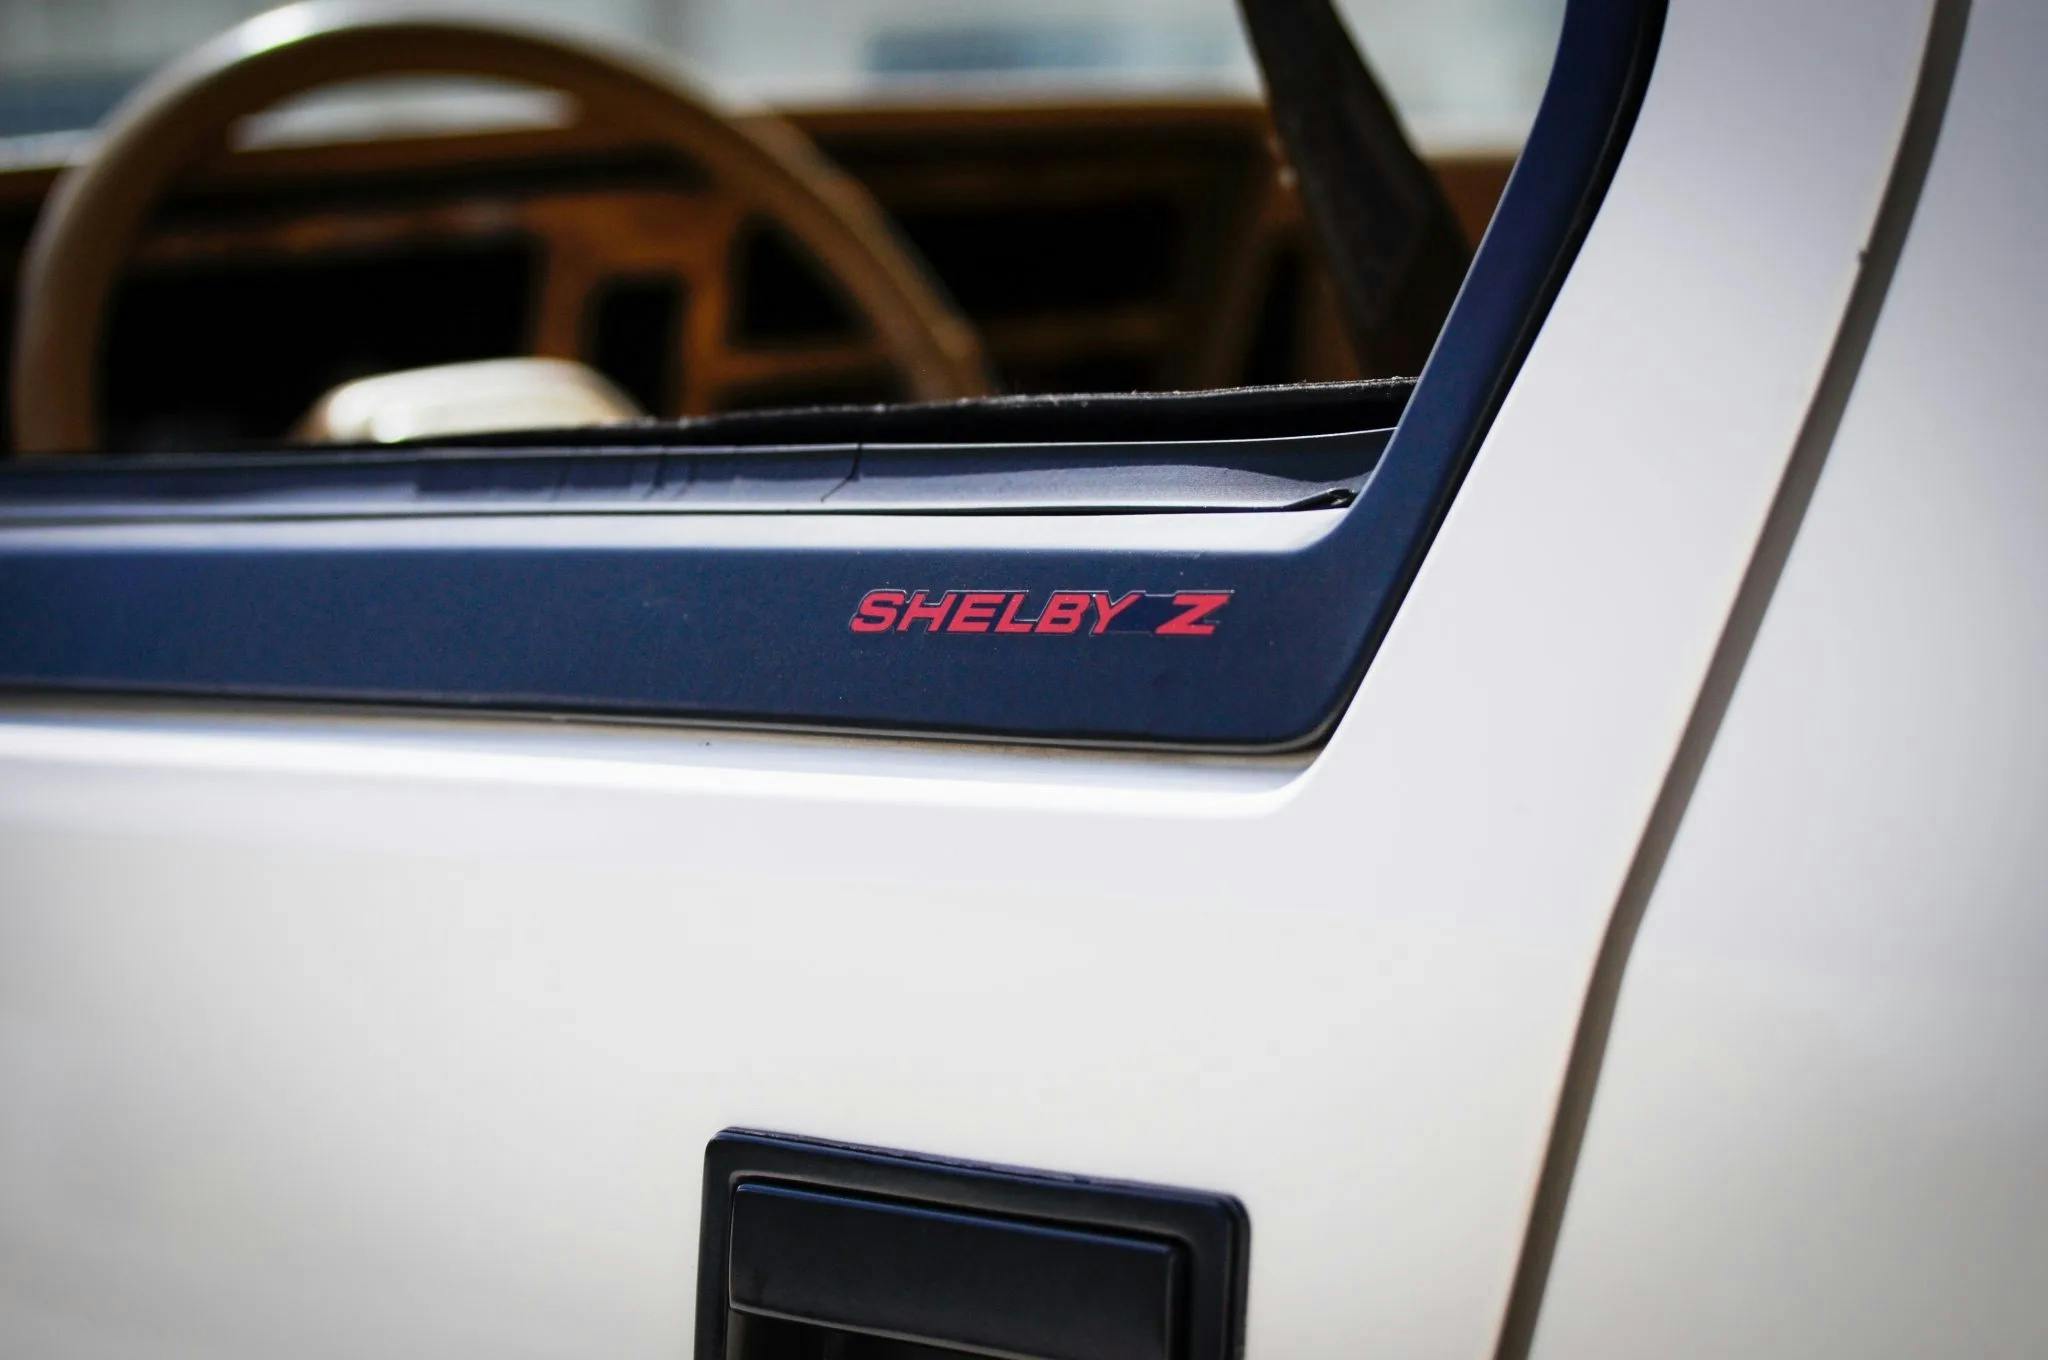 1987 Dodge Daytona Shelby Z lettering